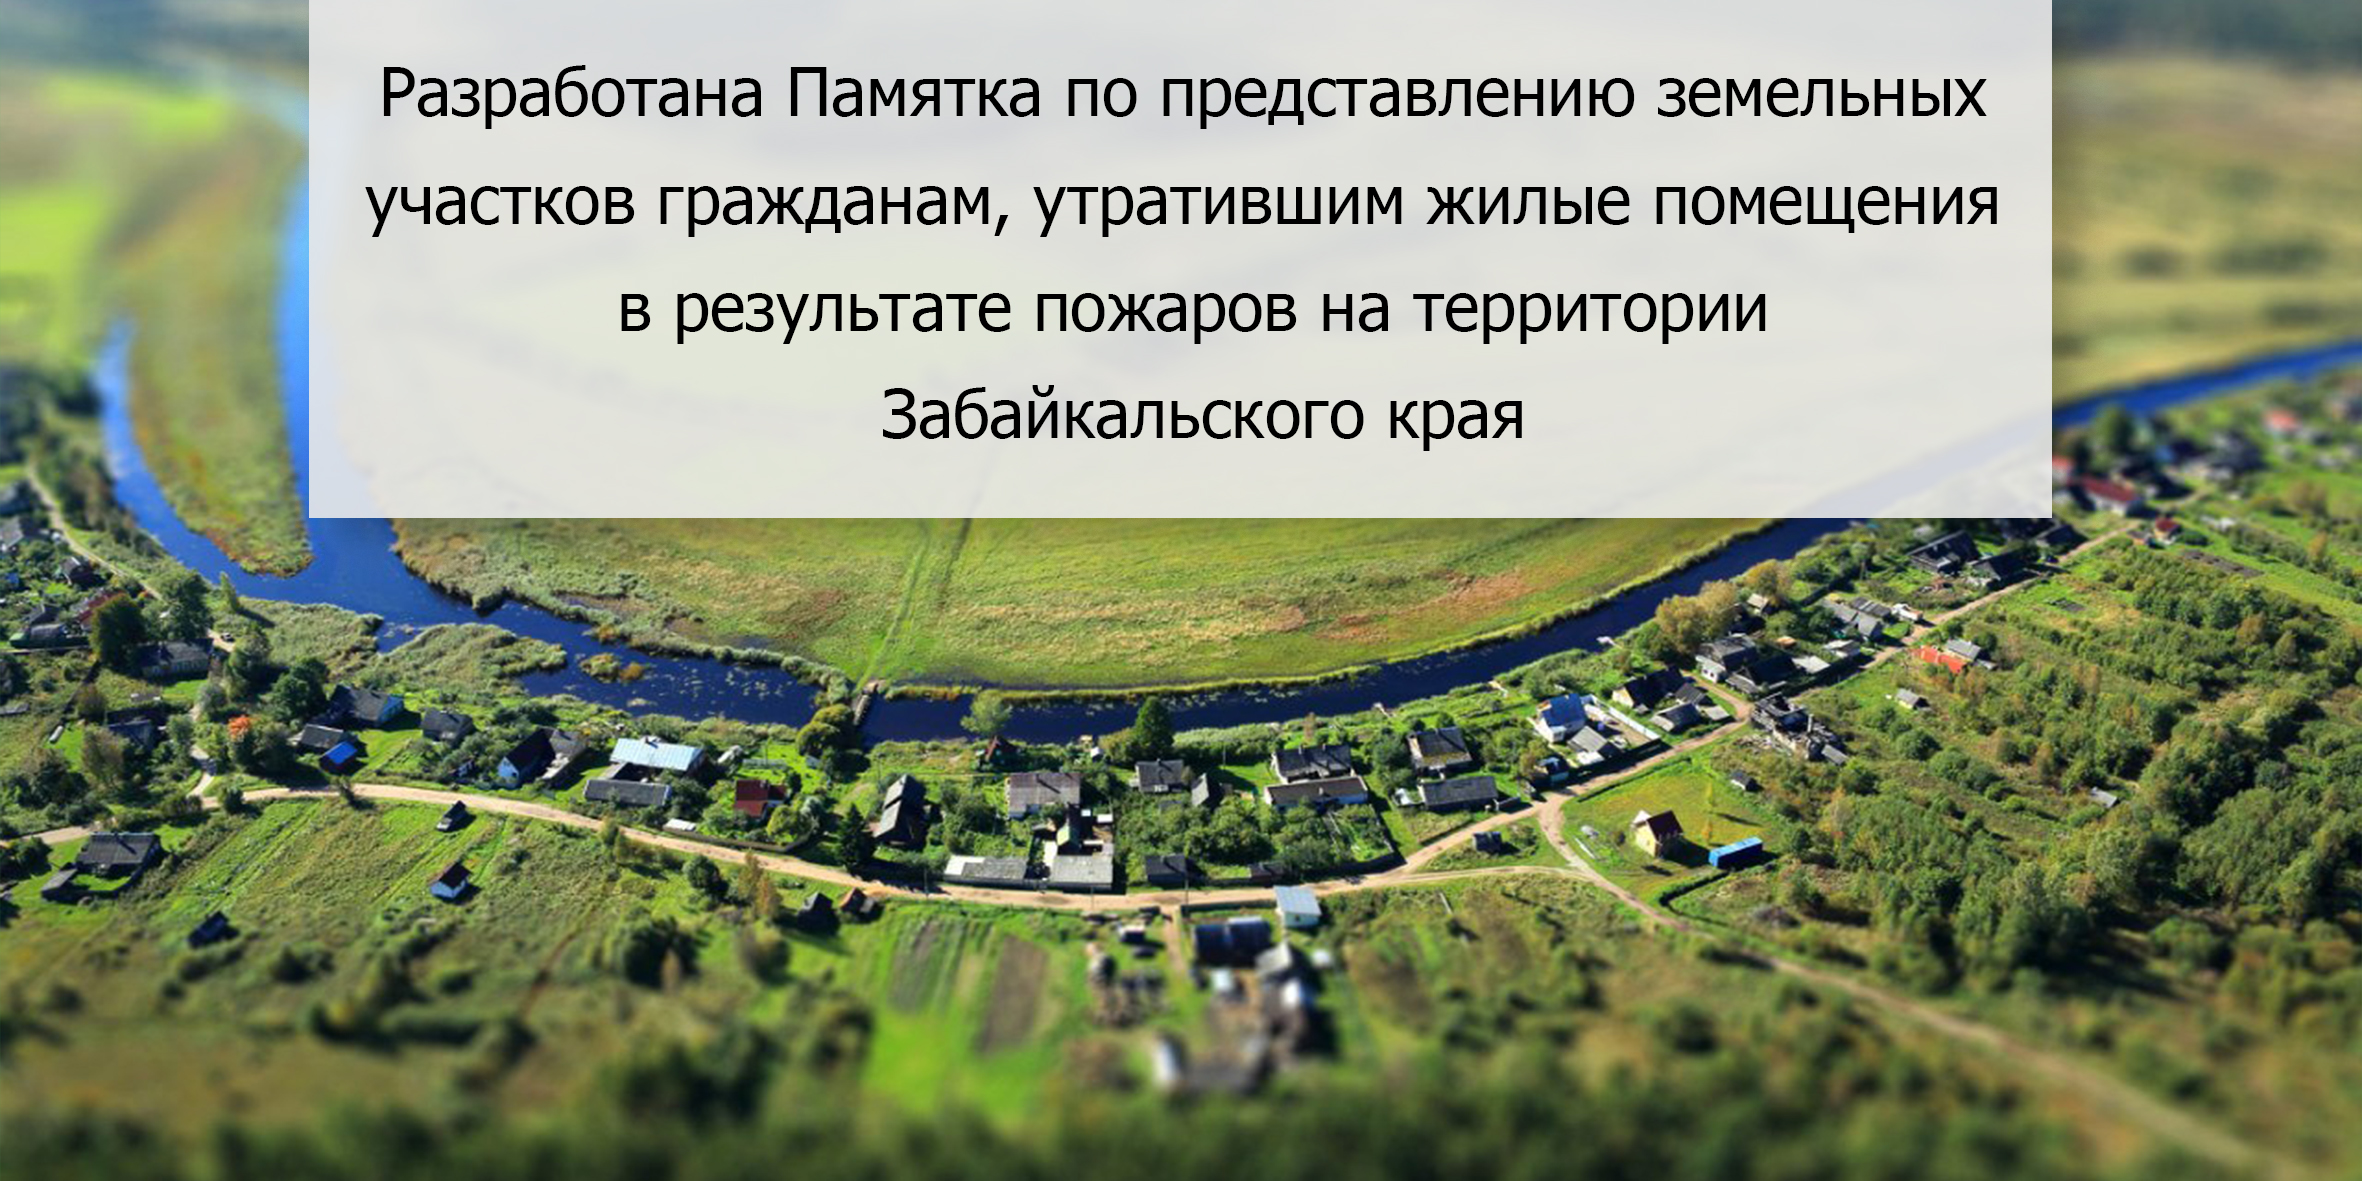 Разработана Памятка по представлению земельных участков гражданам, утратившим жилые помещения в результате пожаров на территории Забайкальского края